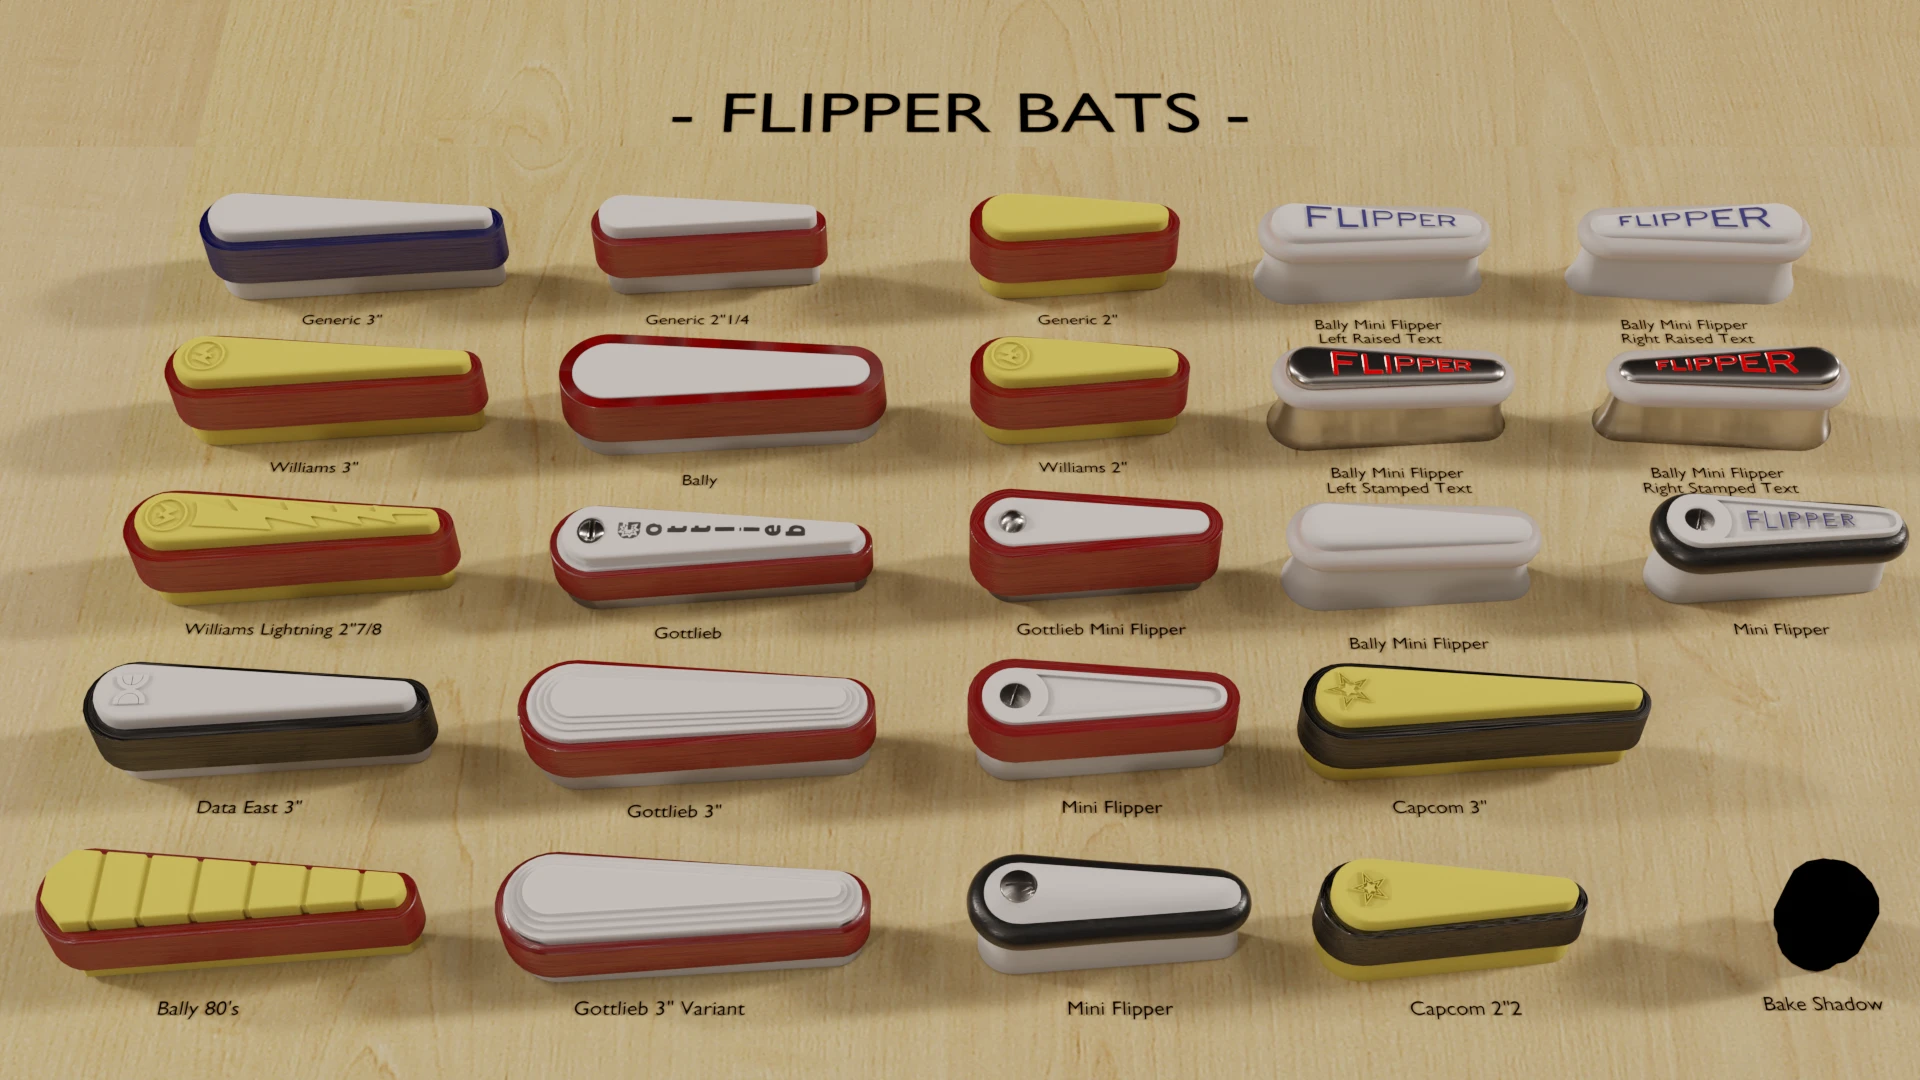 Flipper bats